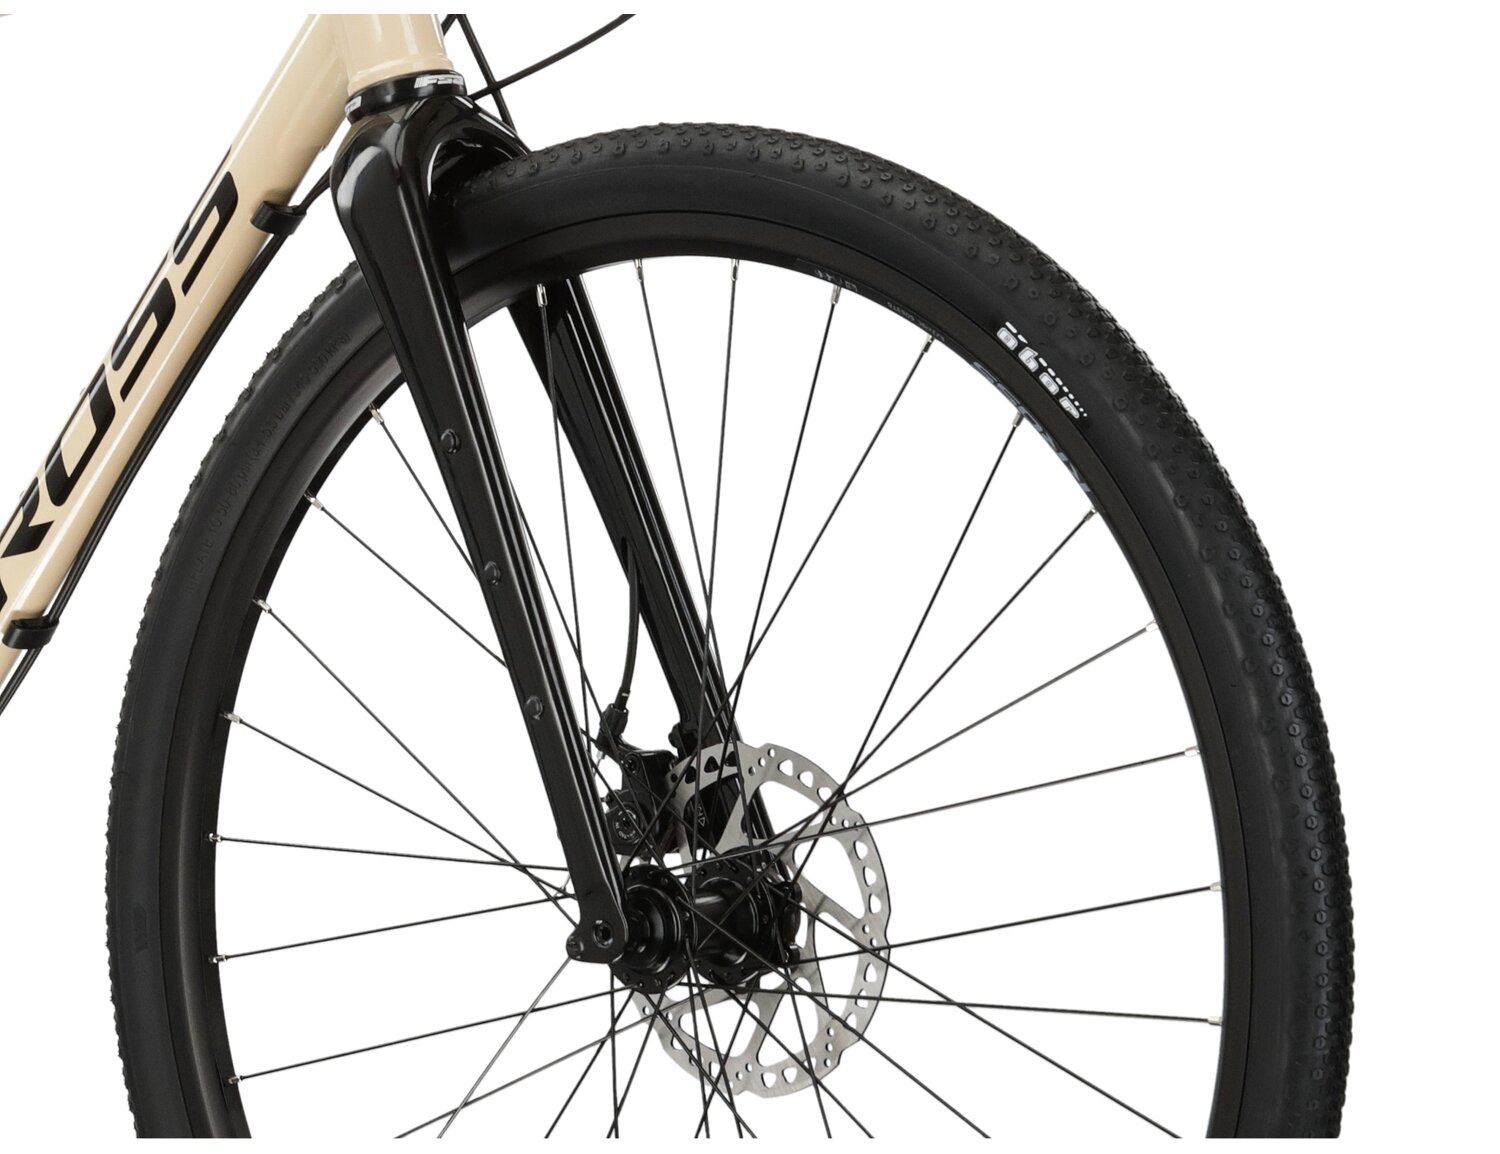  Stalowa rama, sztywny carbonowy widelec i opony 28 cali w rowerze gravelowym Kross Esker 4.0 MS